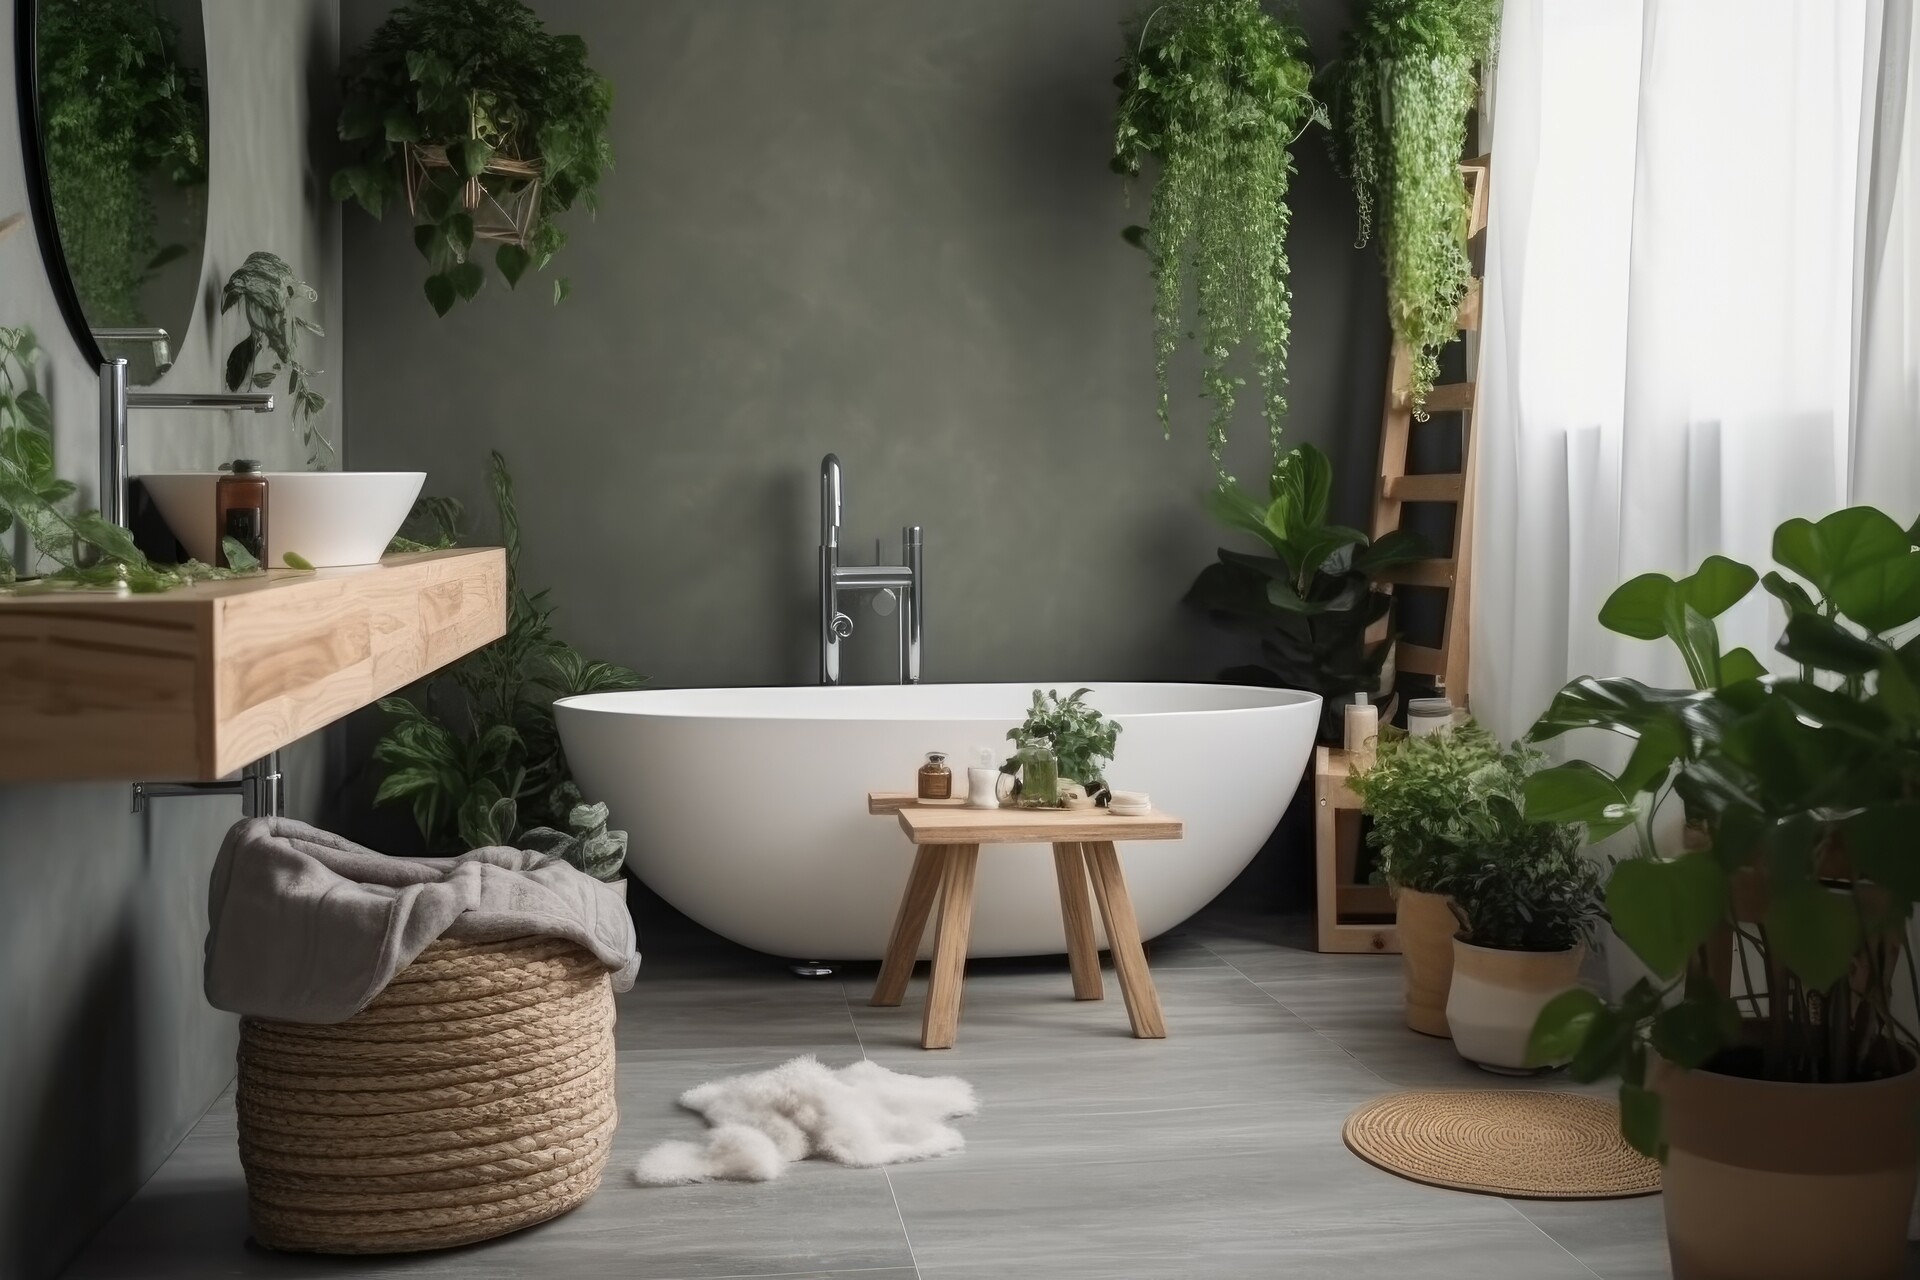 Na tym urokliwym obrazku możemy podziwiać wnętrze ze skandynawską łazienką. Jasne, neutralne kolory, naturalne materiały i minimalistyczne wykończenie tworzą przytulną atmosferę, która emanuje spokojem i prostotą. Ta inspirująca wizualizacja ukazuje, jak skandynawska łazienka może łączyć funkcjonalność z elegancją, tworząc idealne miejsce do odprężenia i relaksu